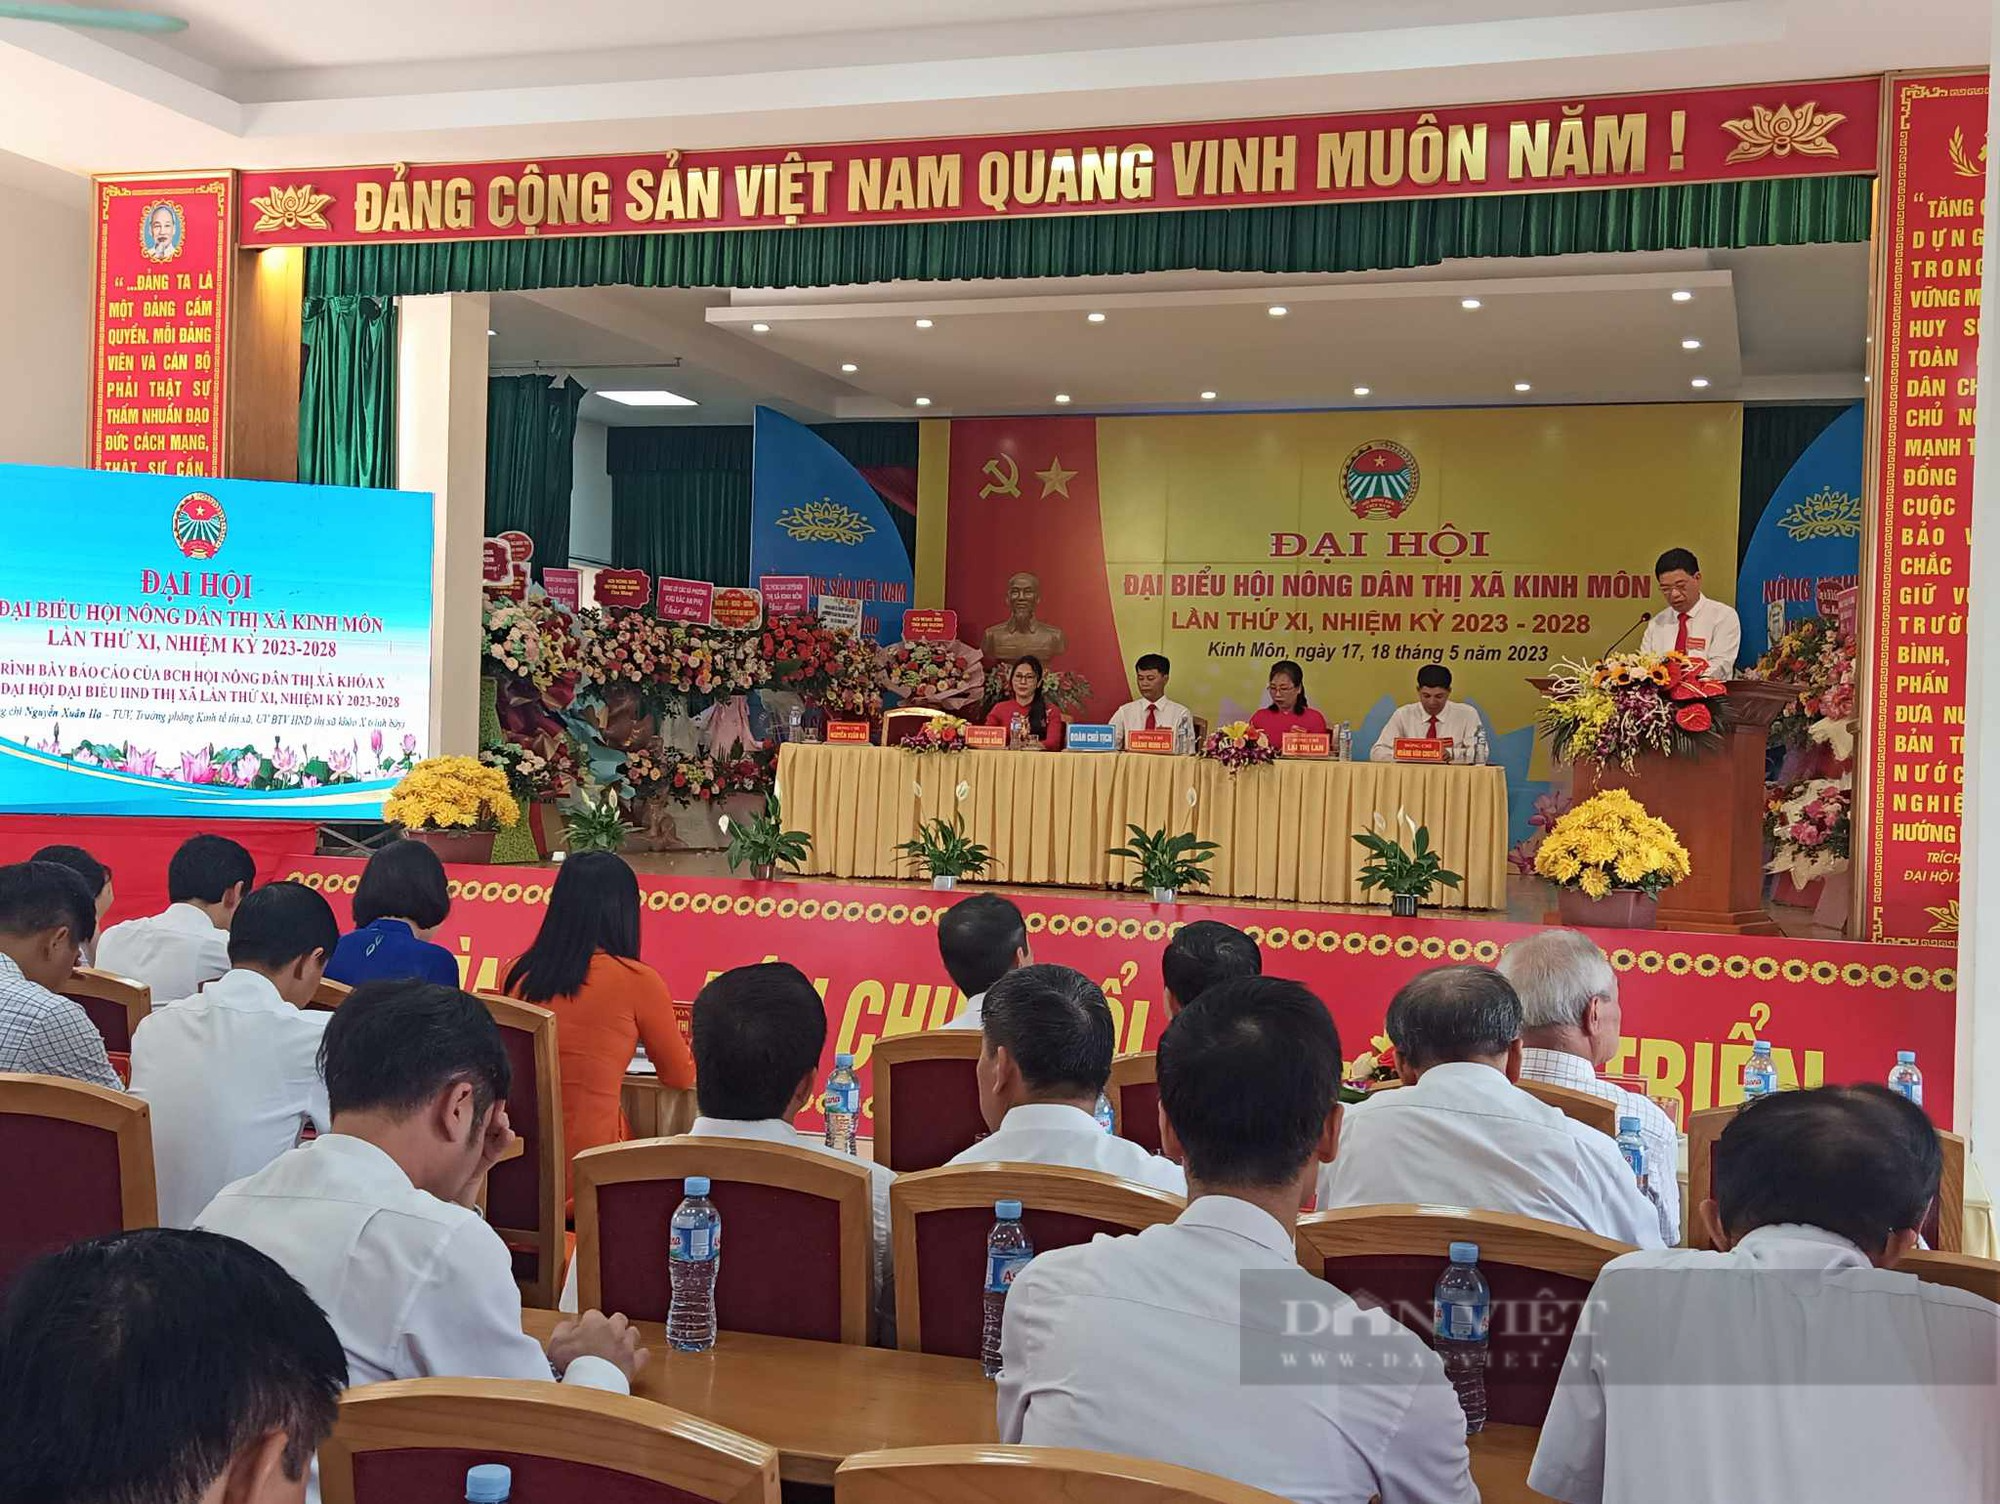 Hải Dương: Đại hội đại biểu Hội Nông dân thị xã Kinh Môn, ông Hoàng Minh Côi tái đắc cử Chủ tịch Hội - Ảnh 5.